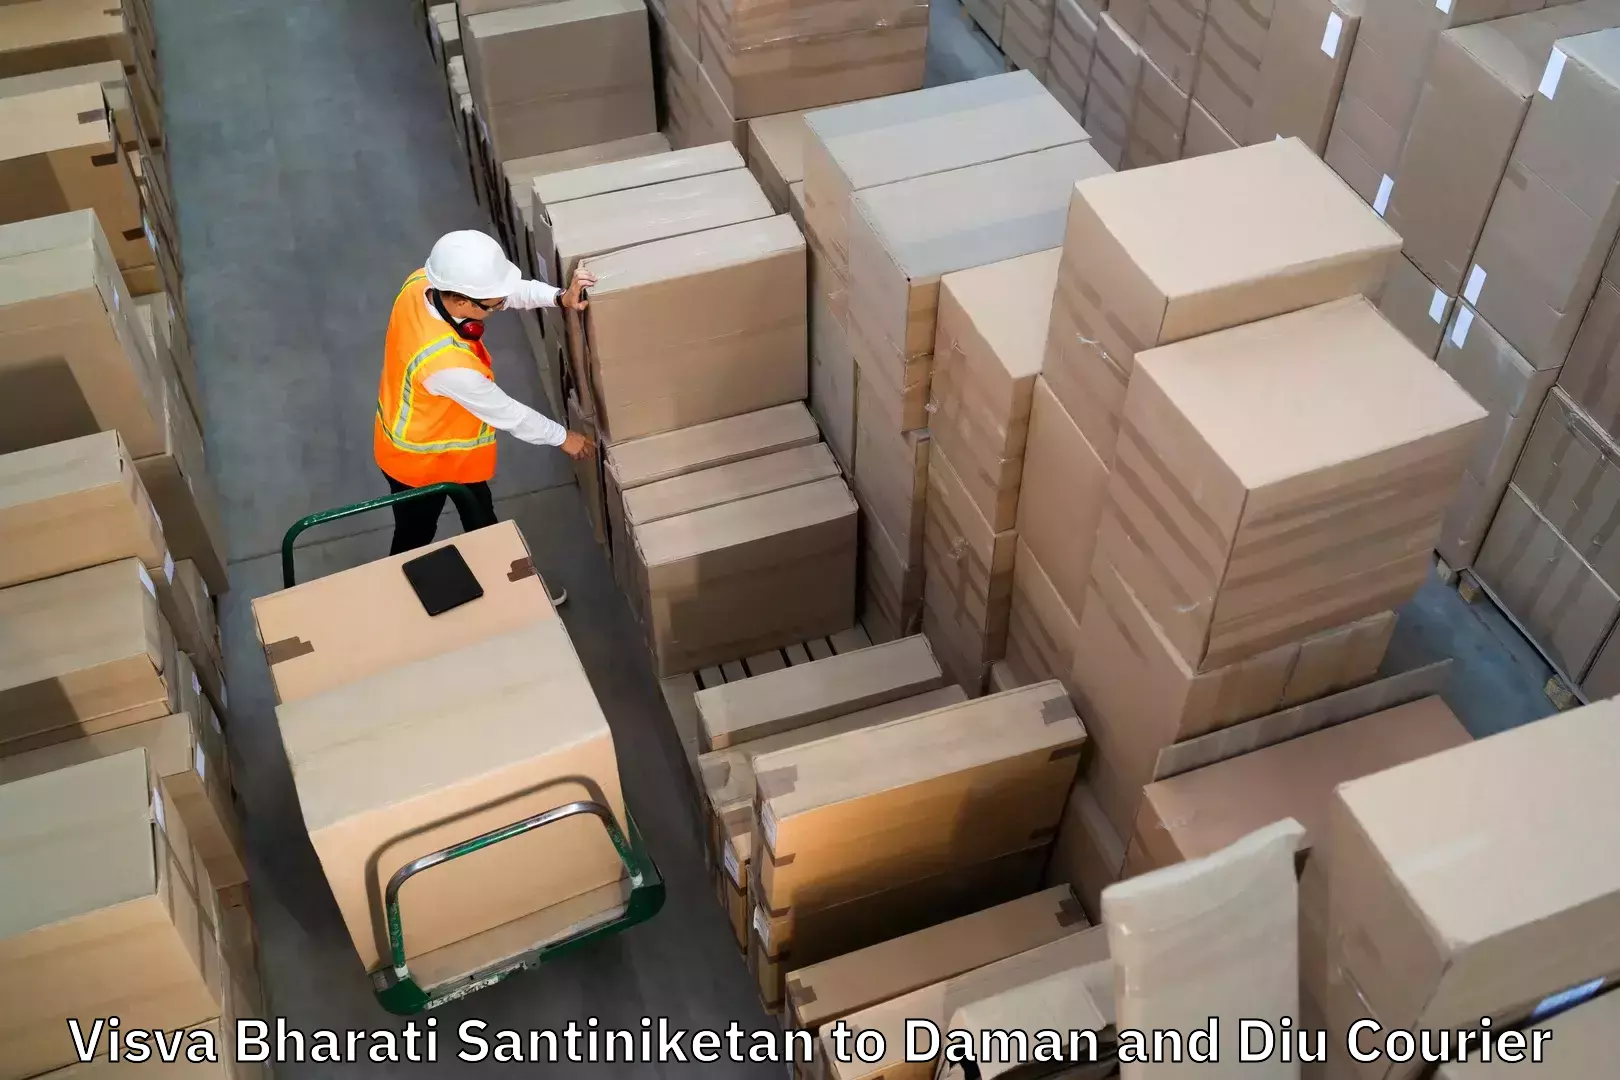 Luggage delivery app Visva Bharati Santiniketan to Diu